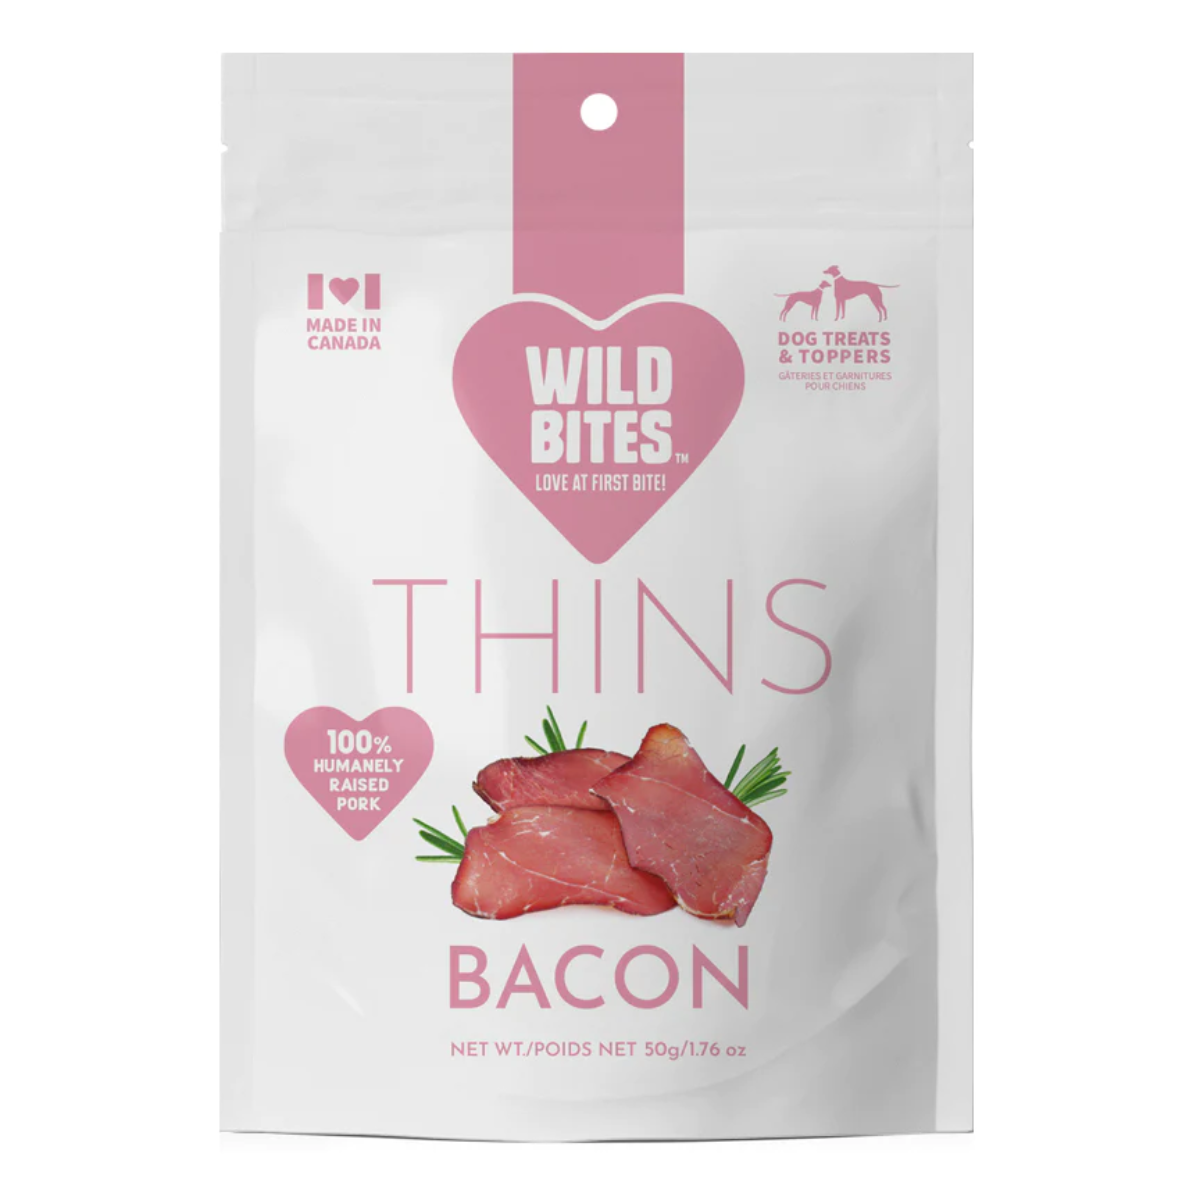 Wild Bites - Bacon Thins - 50g